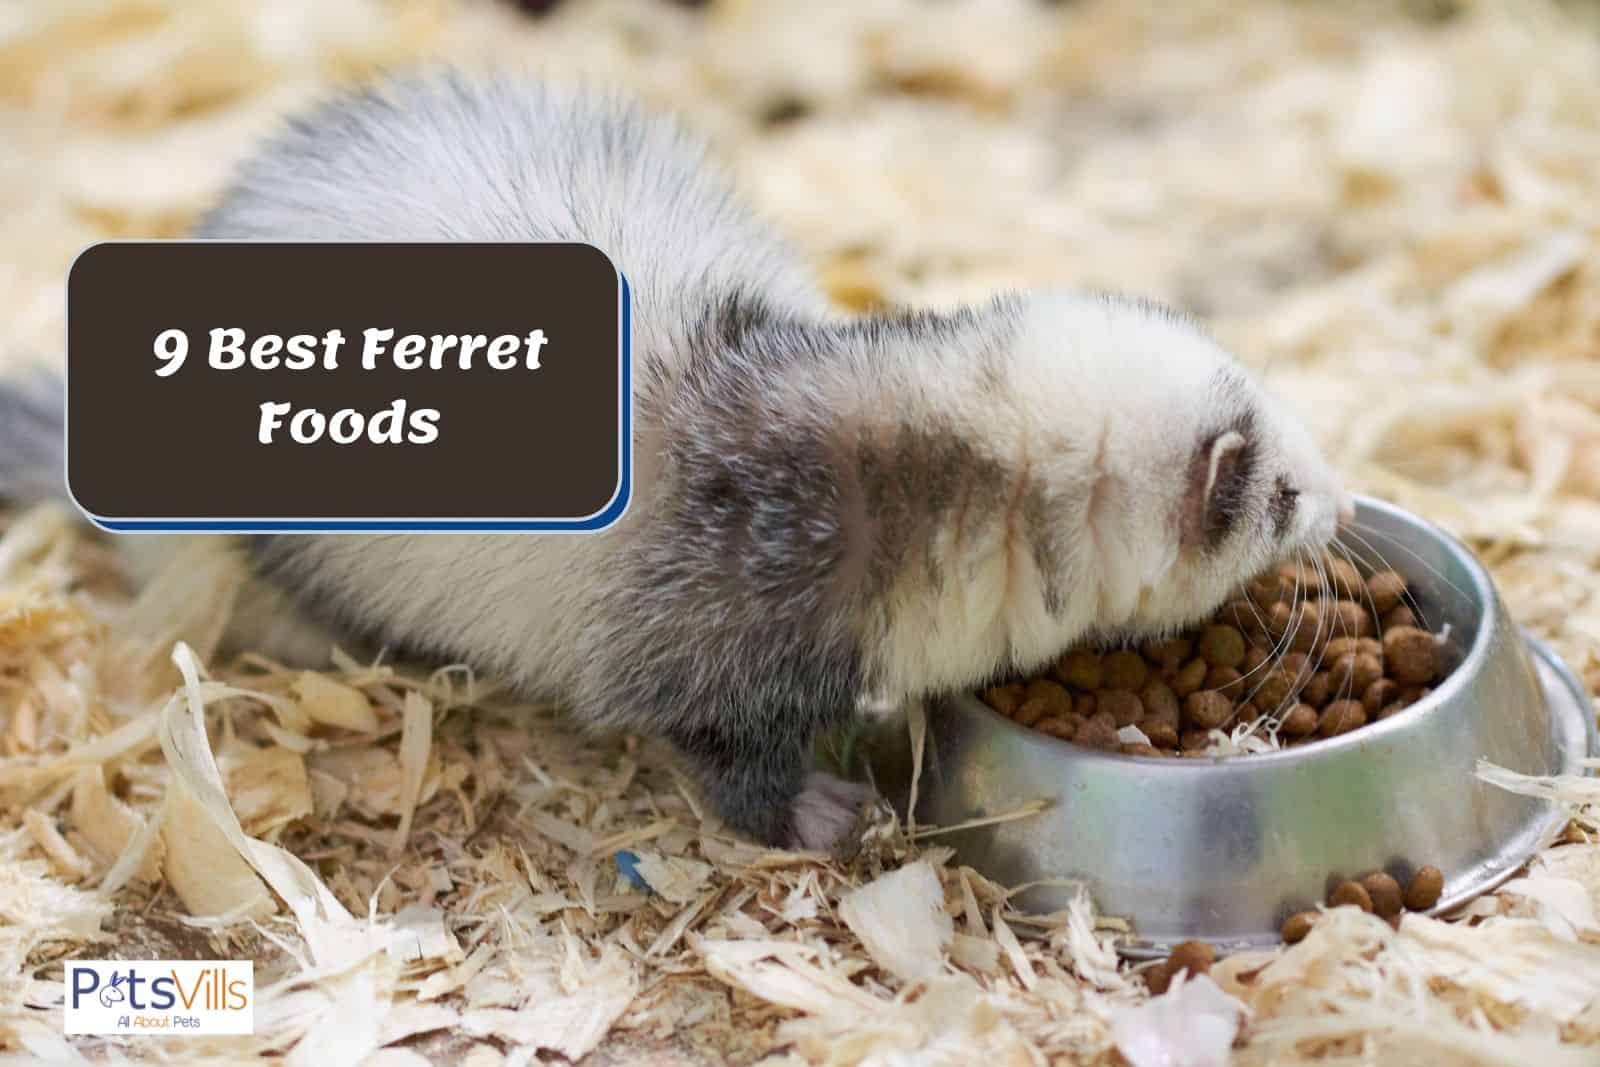 a ferret eating the best ferret food pellet